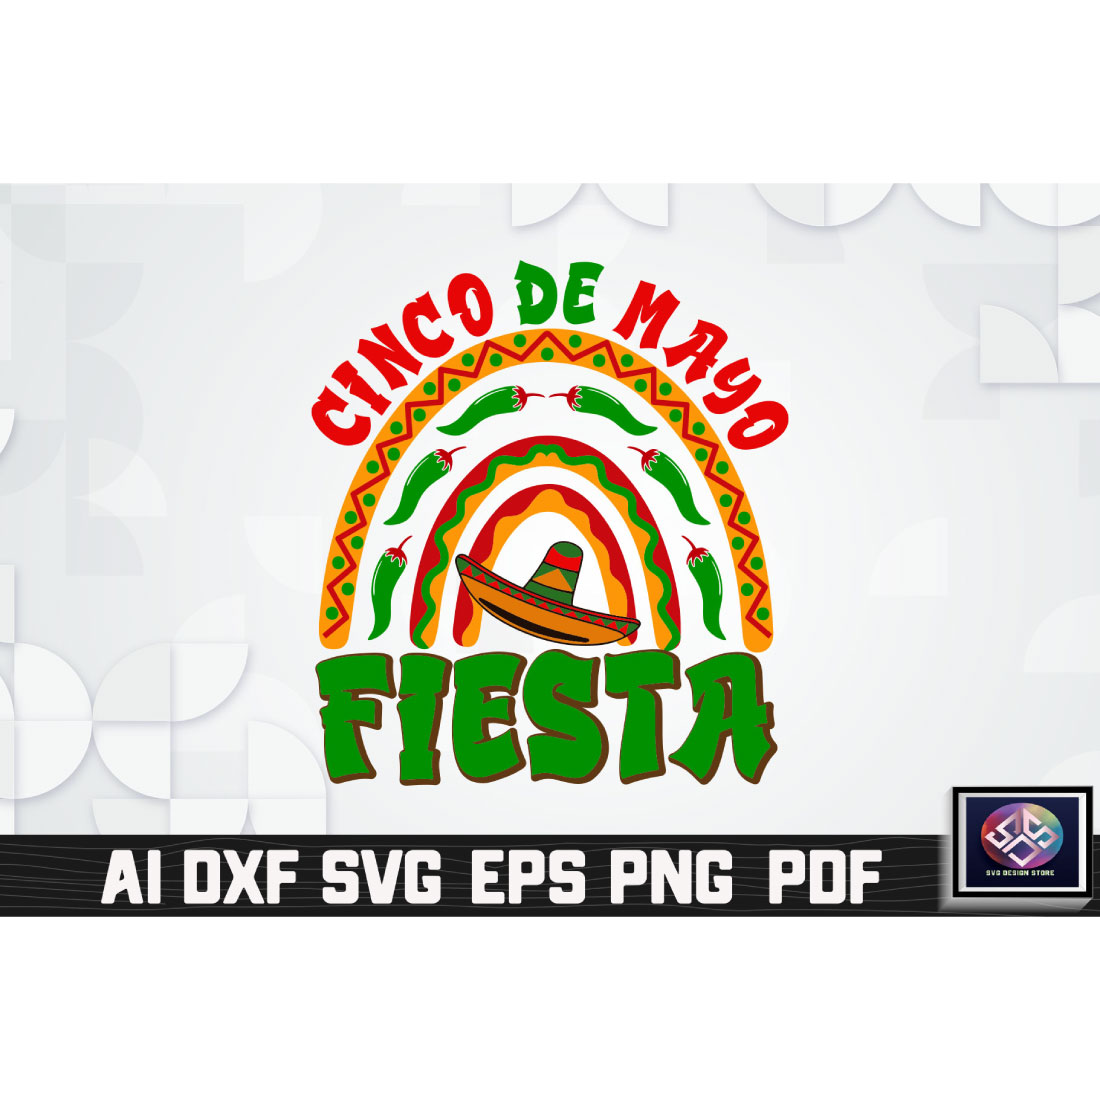 Cinco De Mayo Fiesta Vol 2 cover image.